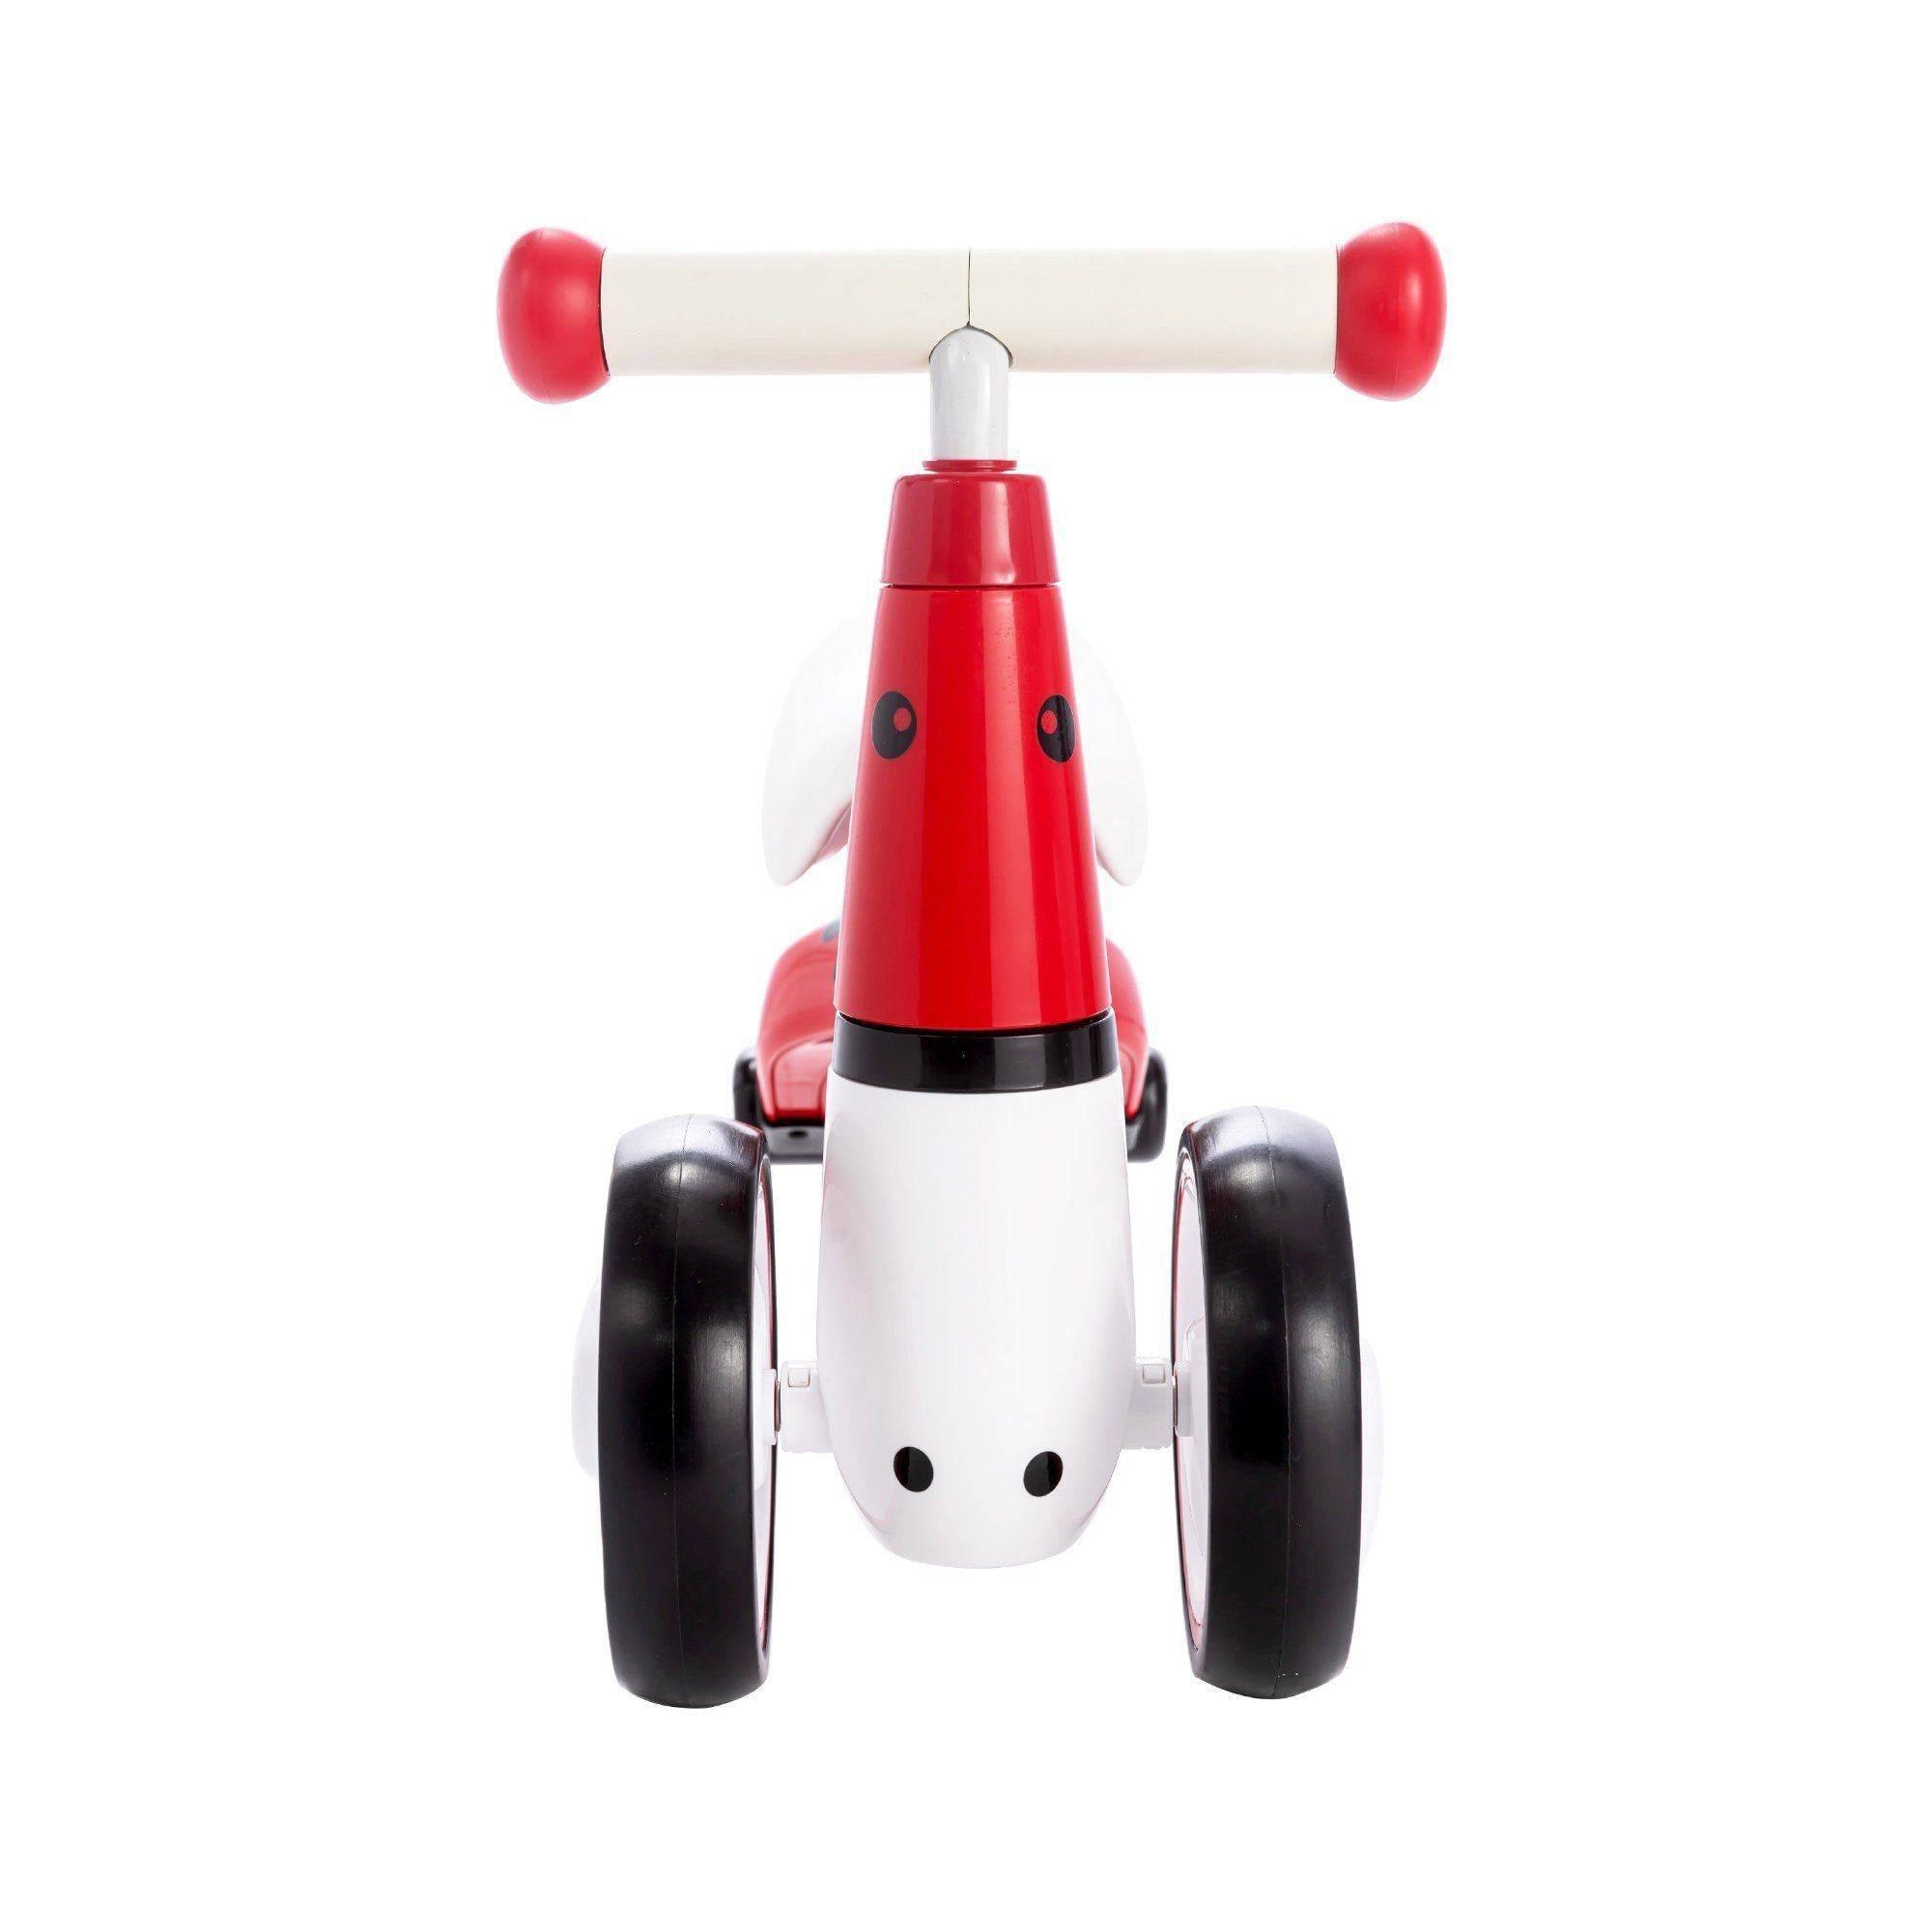 Freddo Toys 3 Wheel Balance Bike - DTI Direct USA